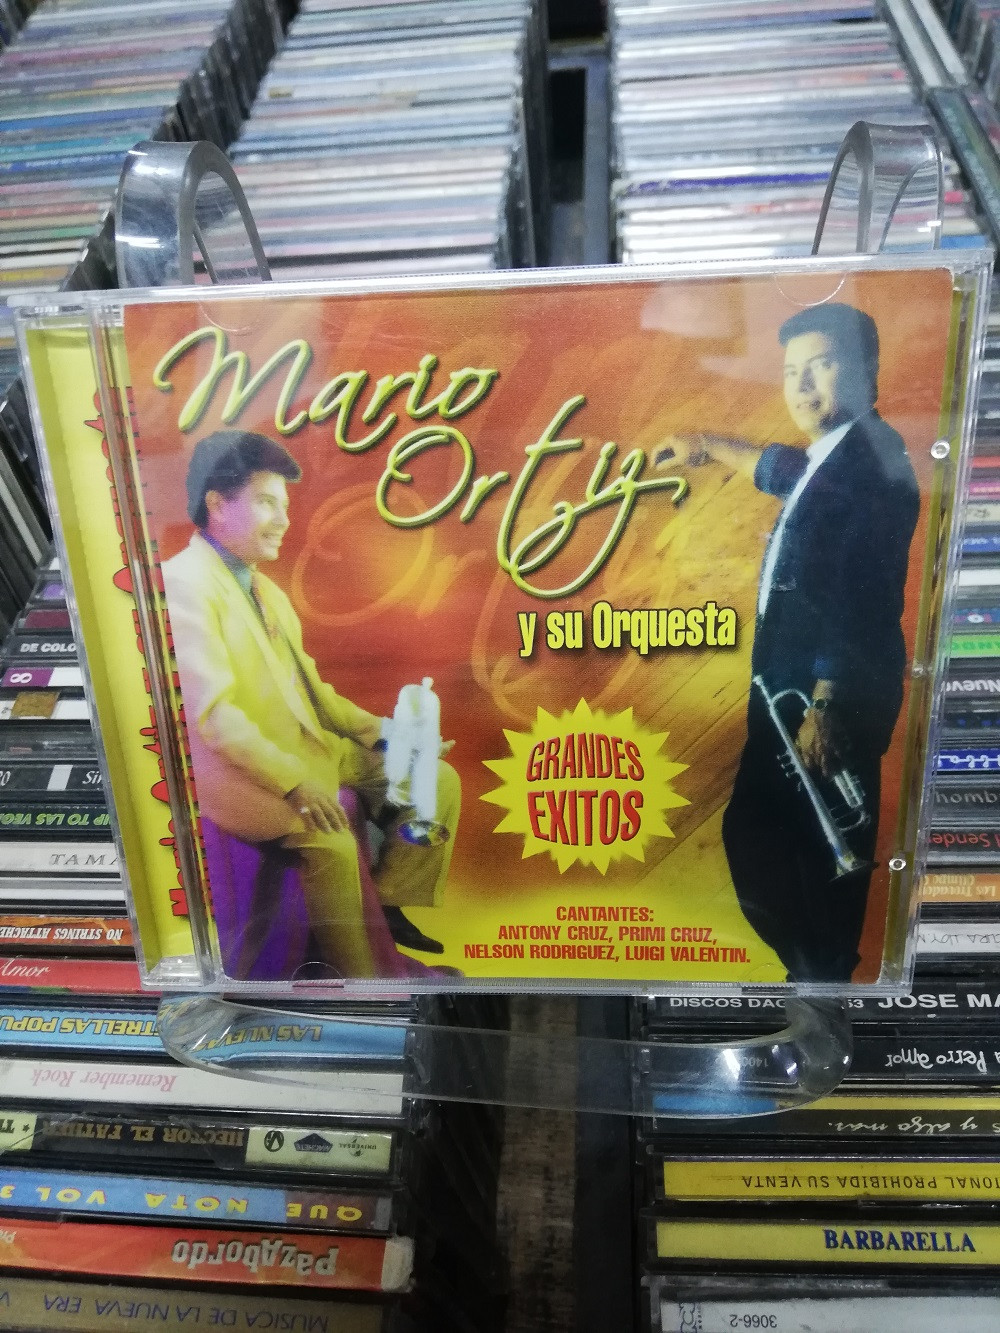 Imagen CD MARIO ORTIZ Y SU ORQUESTA - GRANDES EXITOS